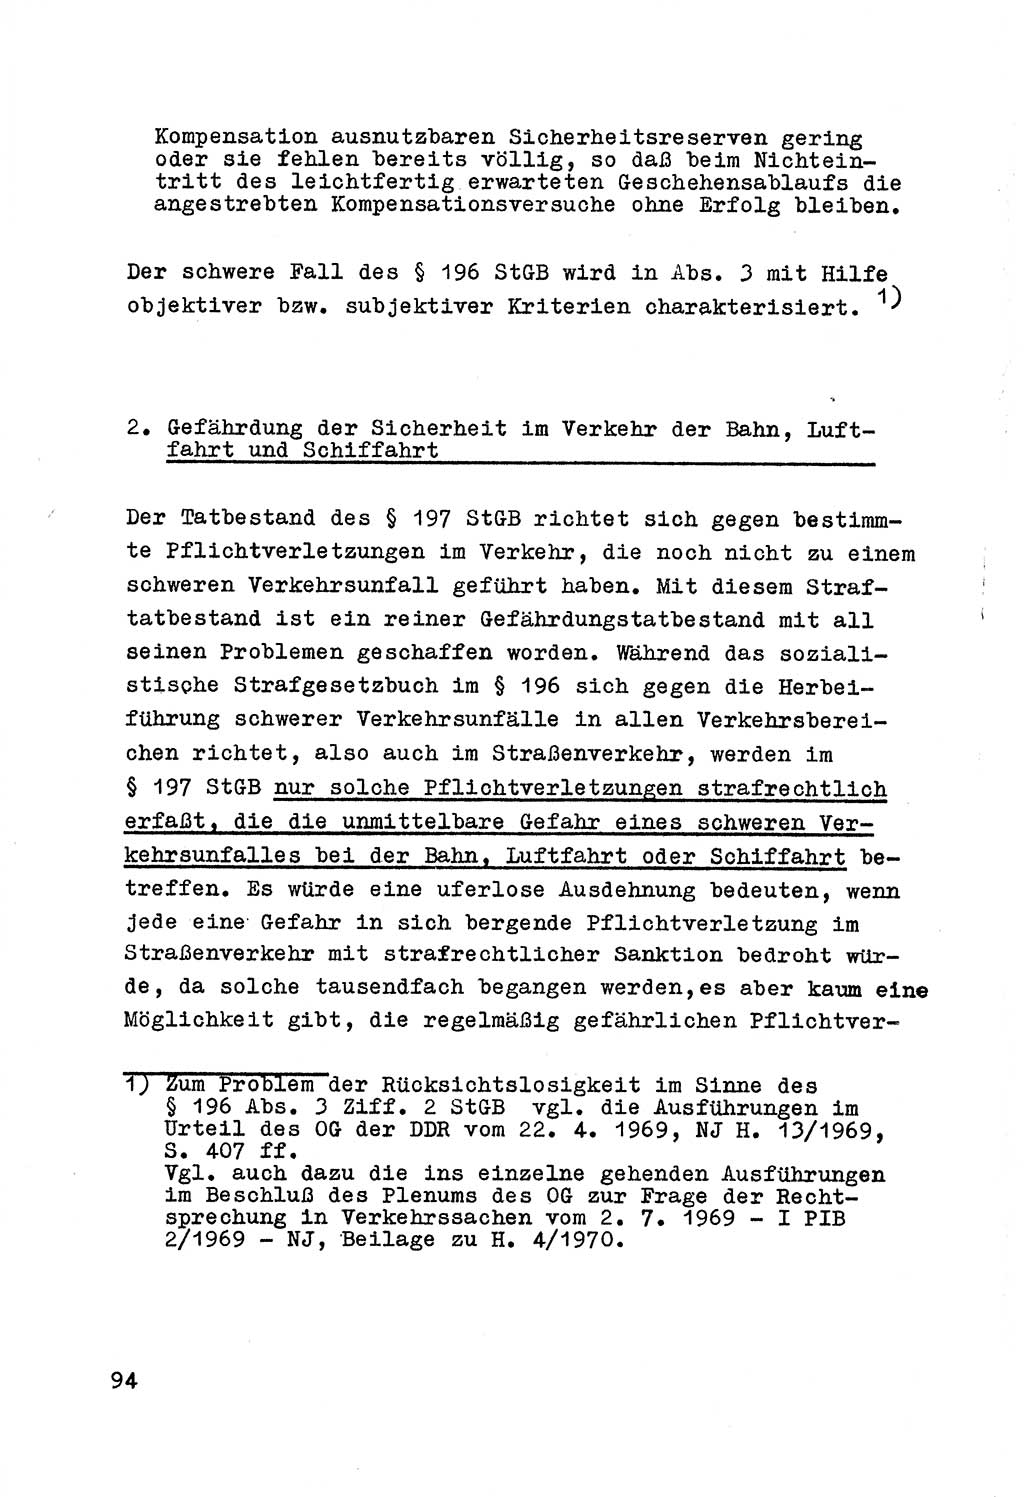 Strafrecht der DDR (Deutsche Demokratische Republik), Besonderer Teil, Lehrmaterial, Heft 7 1970, Seite 94 (Strafr. DDR BT Lehrmat. H. 7 1970, S. 94)